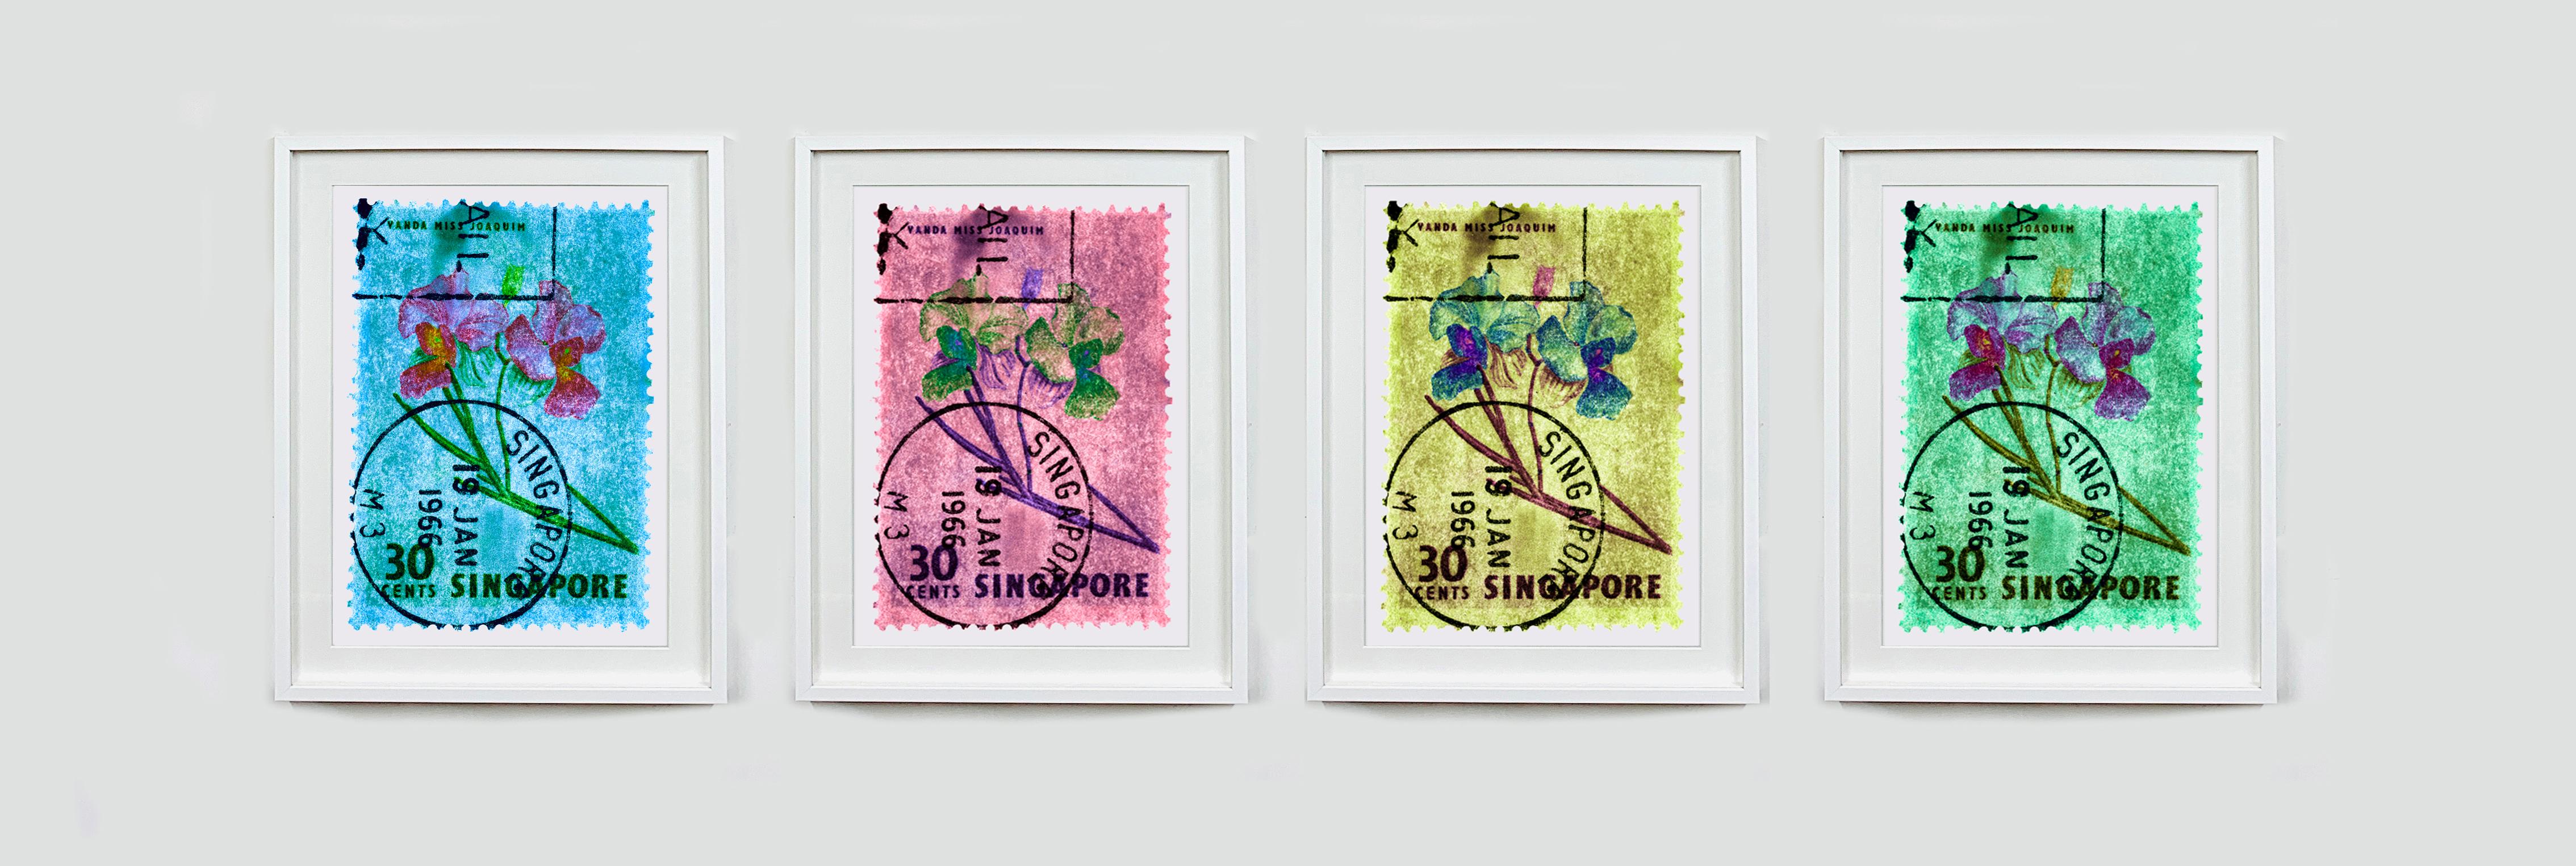 Collection de timbres de Singapour, 30c Singapour Quatre - Photo couleur florale - Print de Heidler & Heeps